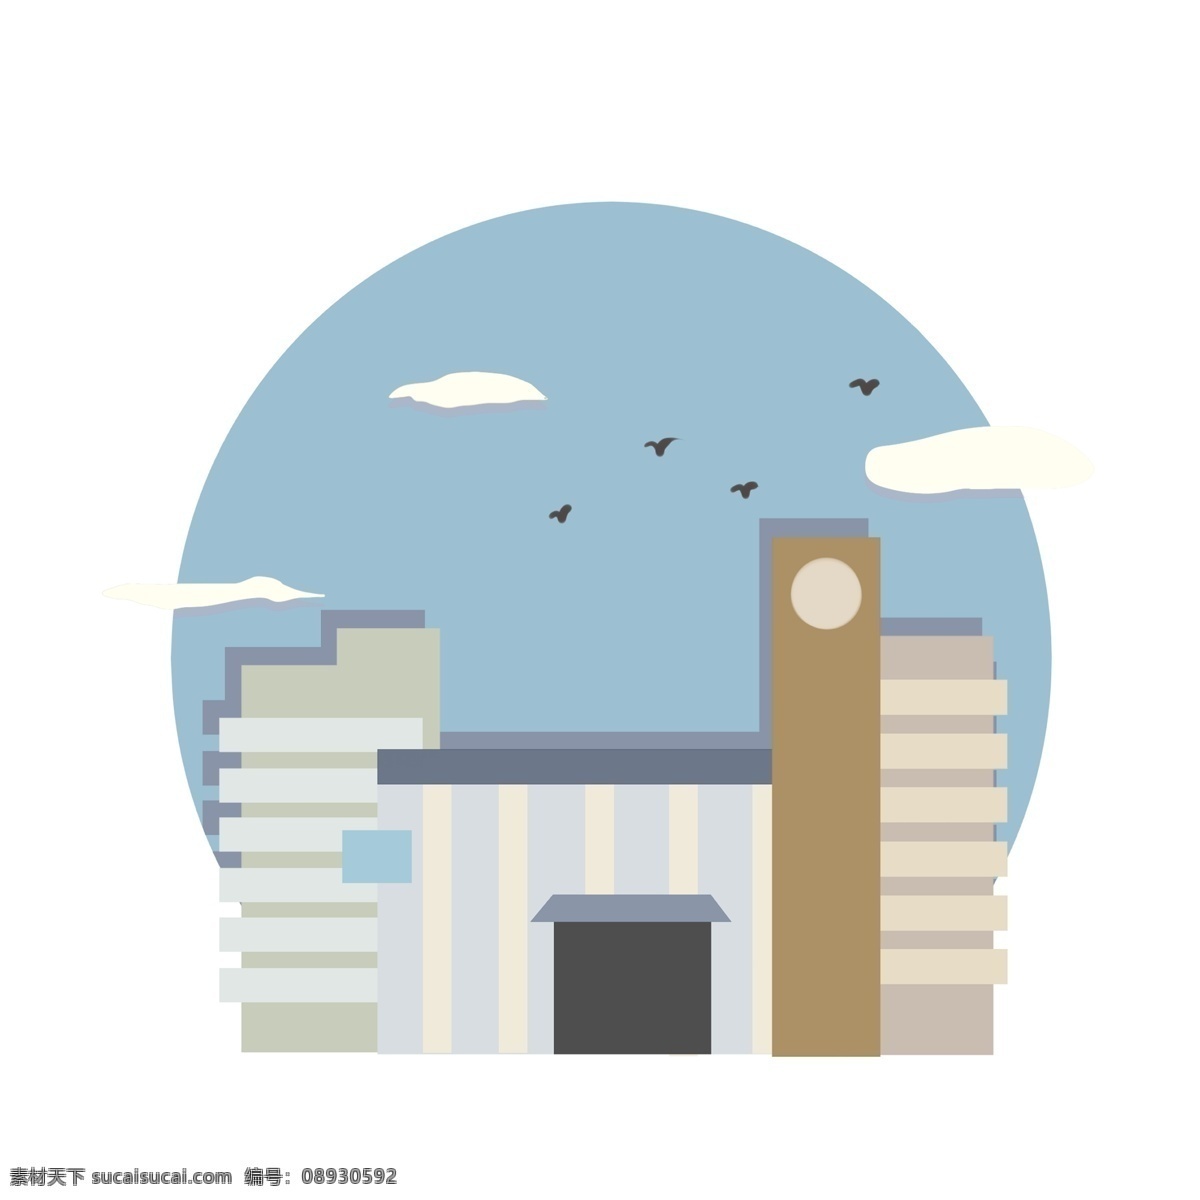 手绘 城市 地标 大庆 插画 黑色的小鸟 蓝蓝的天空 卡通插画 手绘地标插画 创意建筑插画 白色的楼房